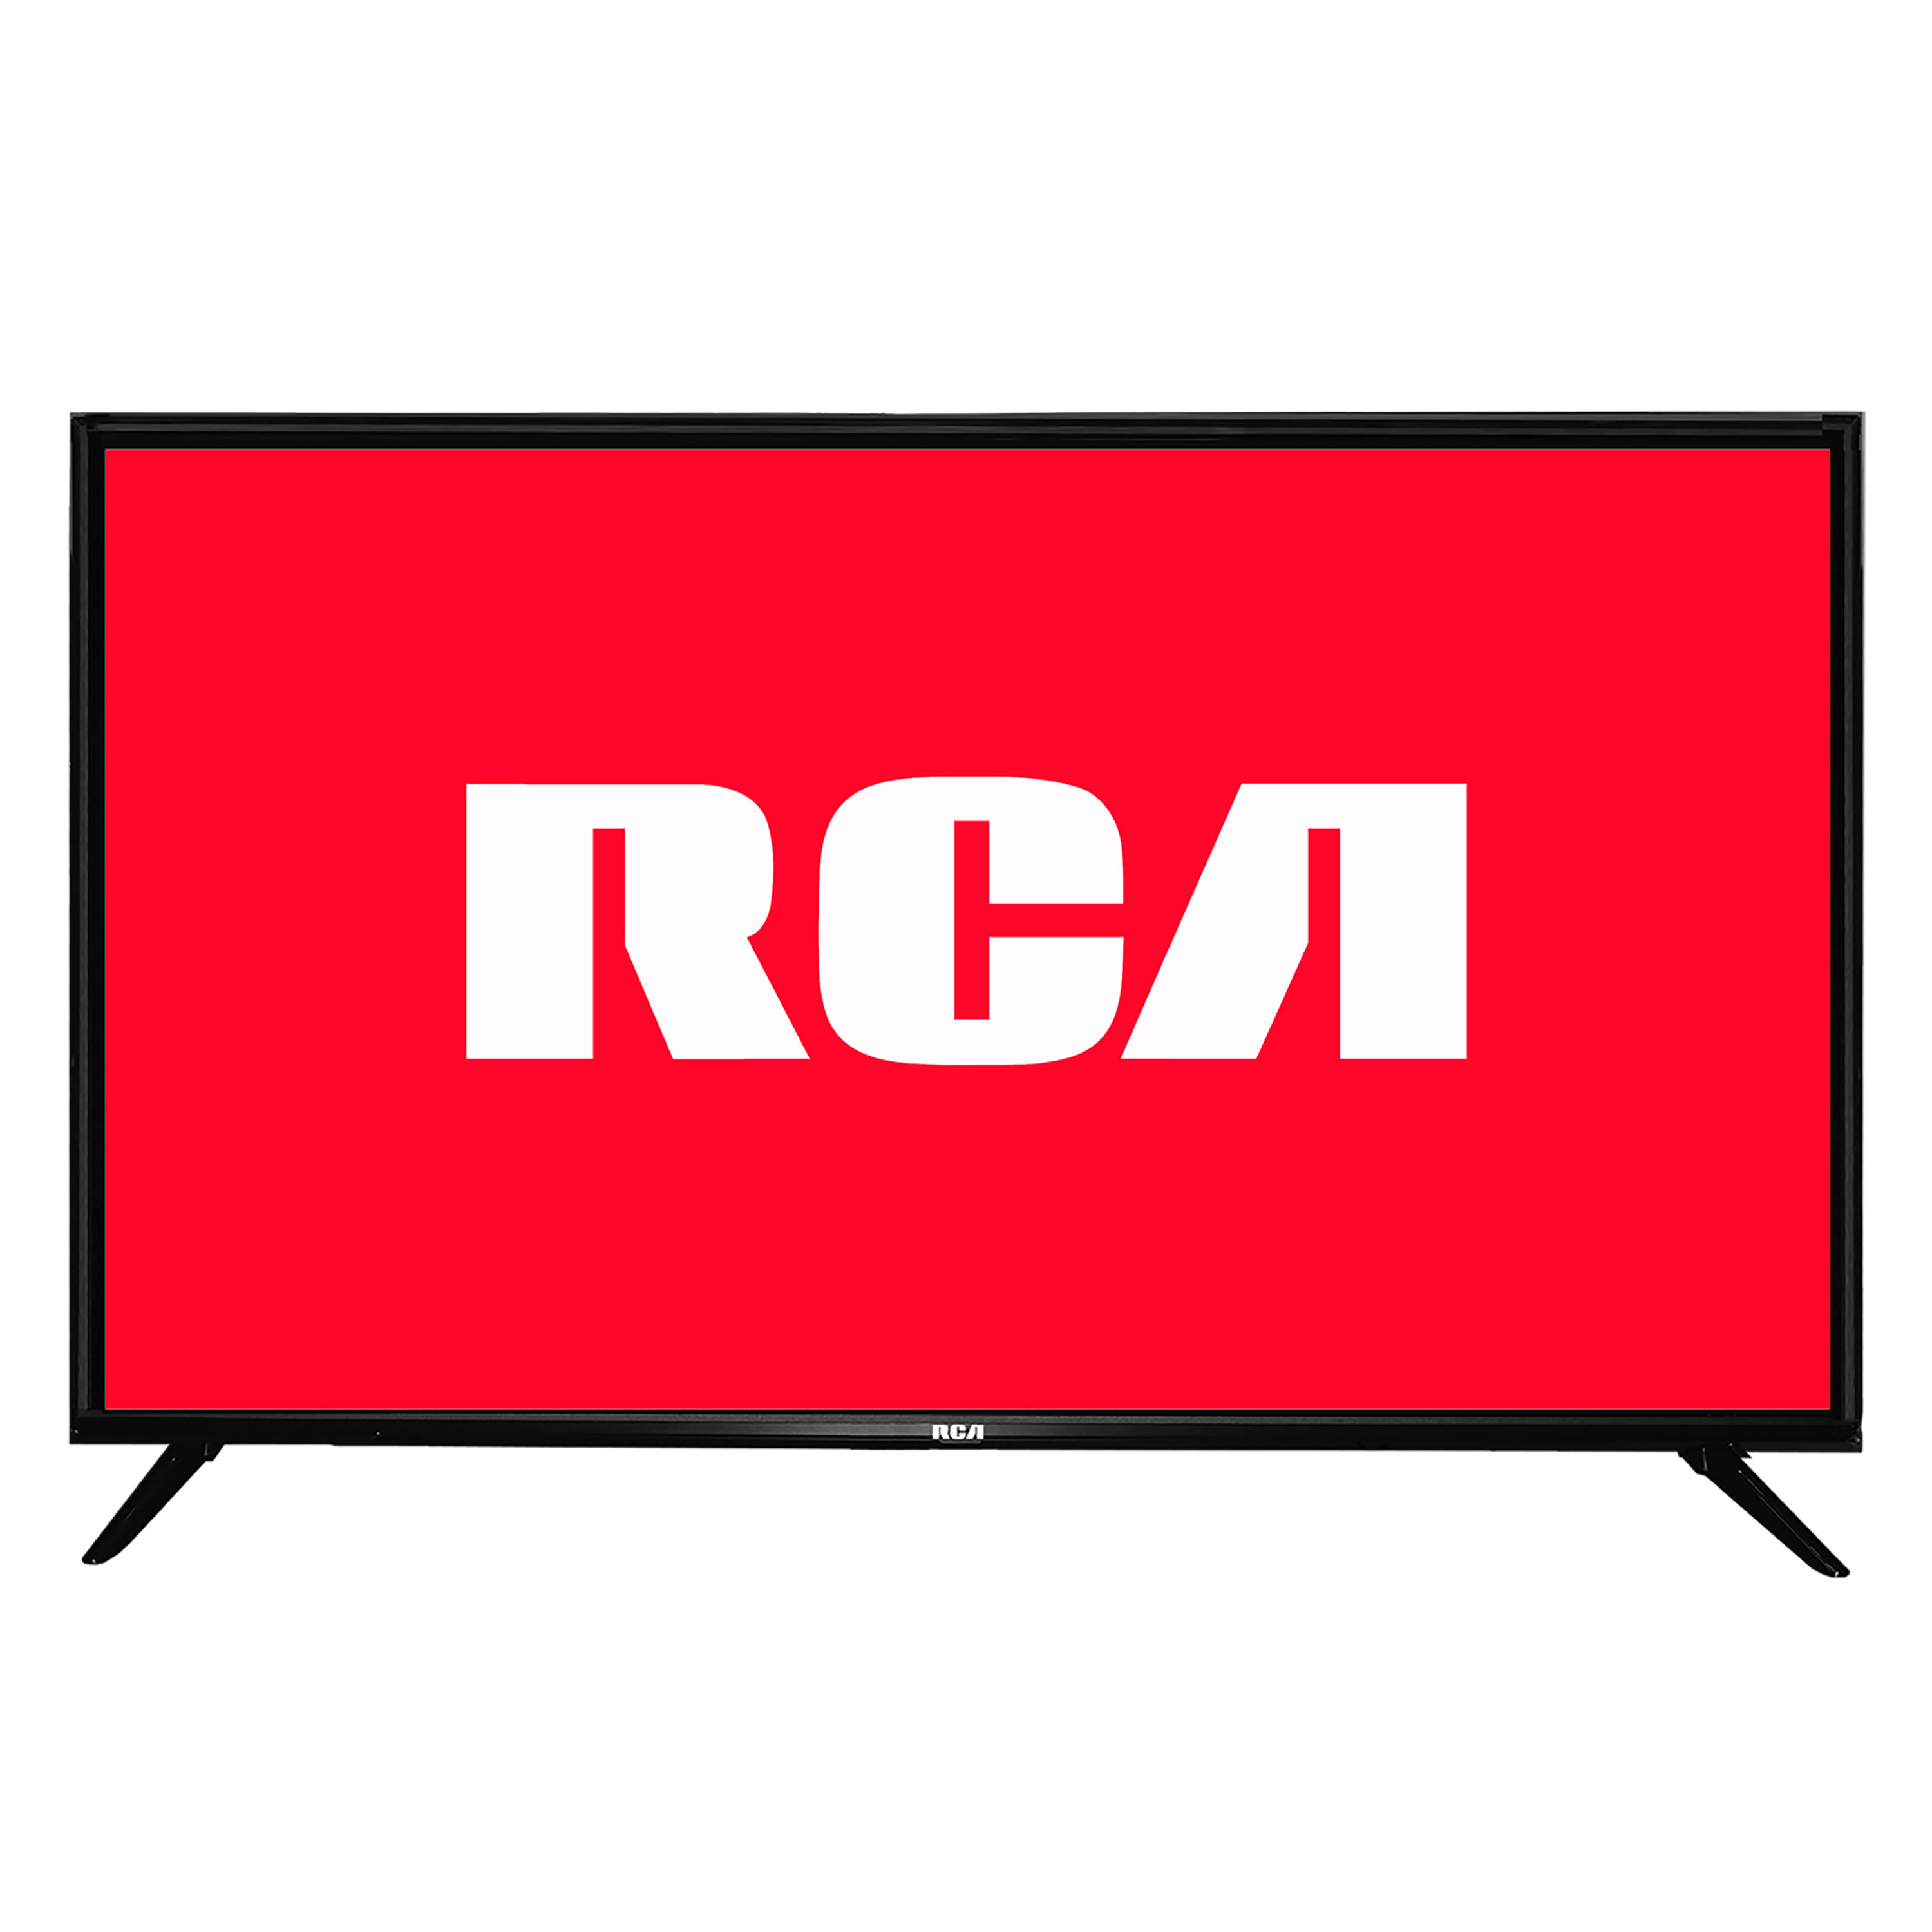 Comprar Pantalla Smart TV RCA Roku Led De 32 Pulgadas Modelo:Rc32Rk, Walmart Guatemala - Maxi Despensa